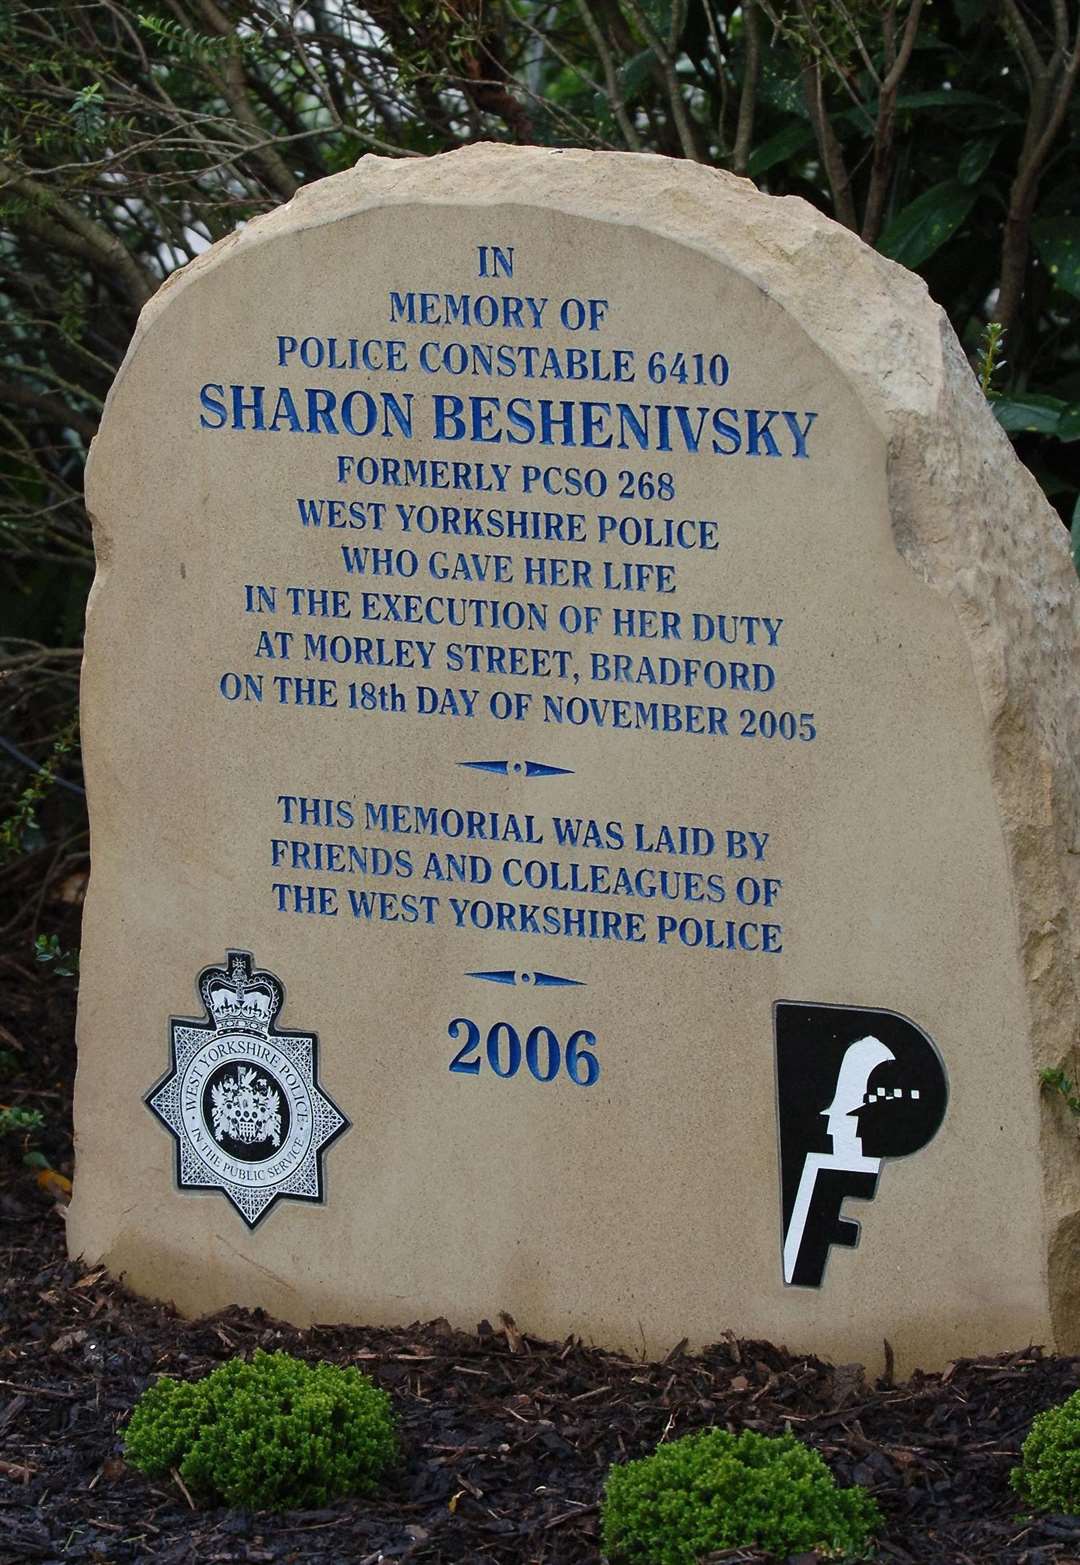 A memorial for Pc Sharon Beshenivsky (John Giles/PA)